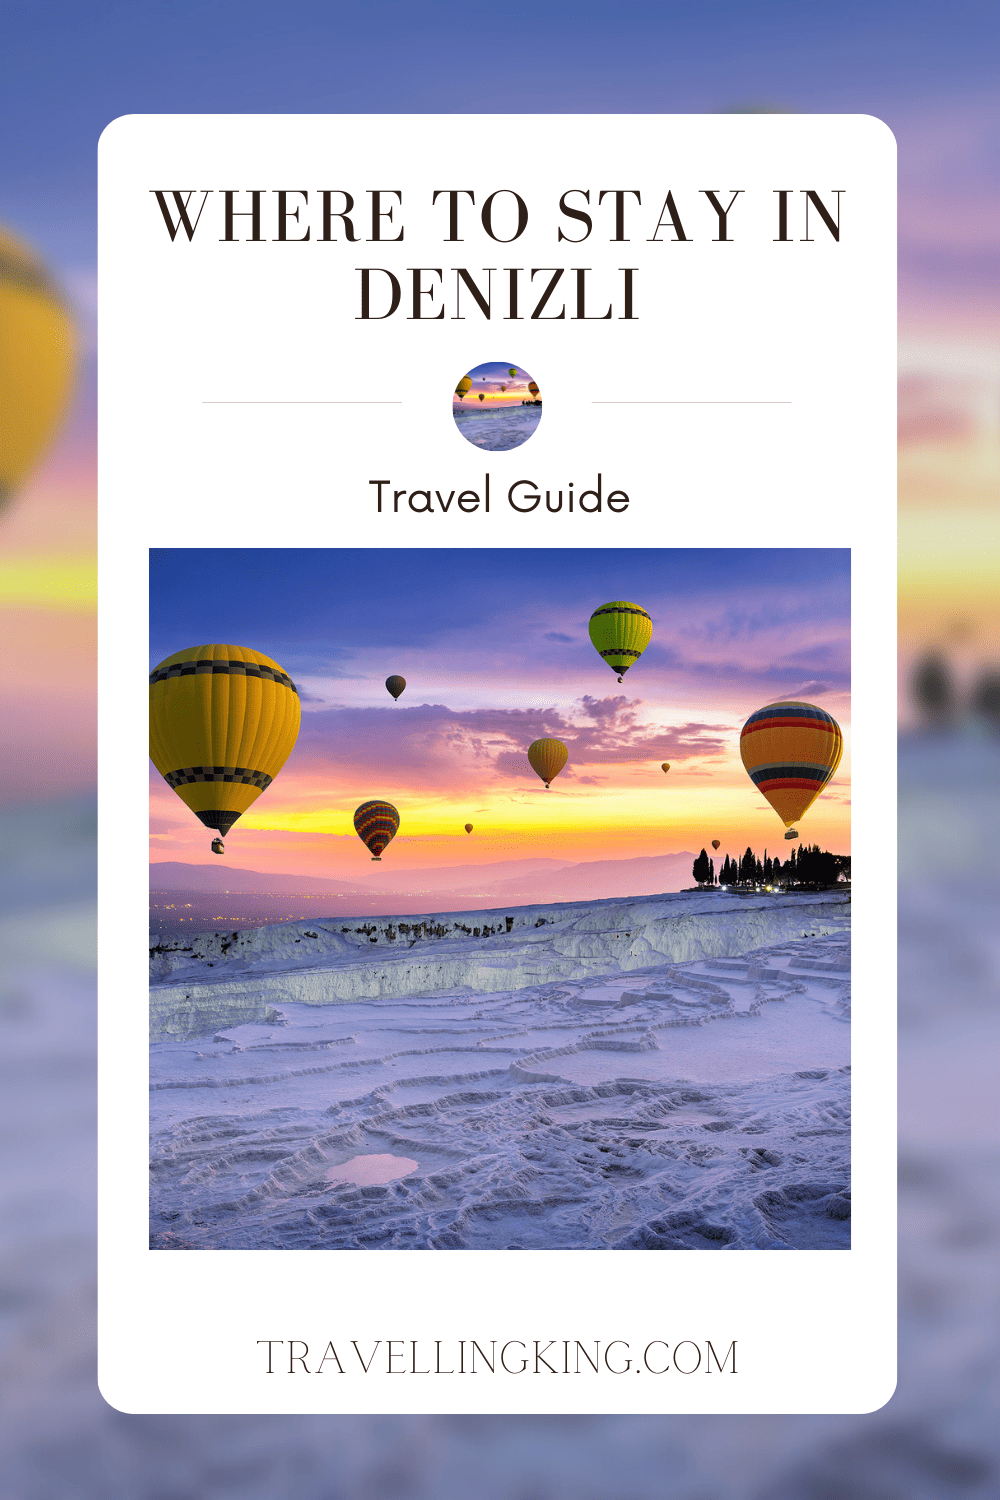 Where to stay in Denizli